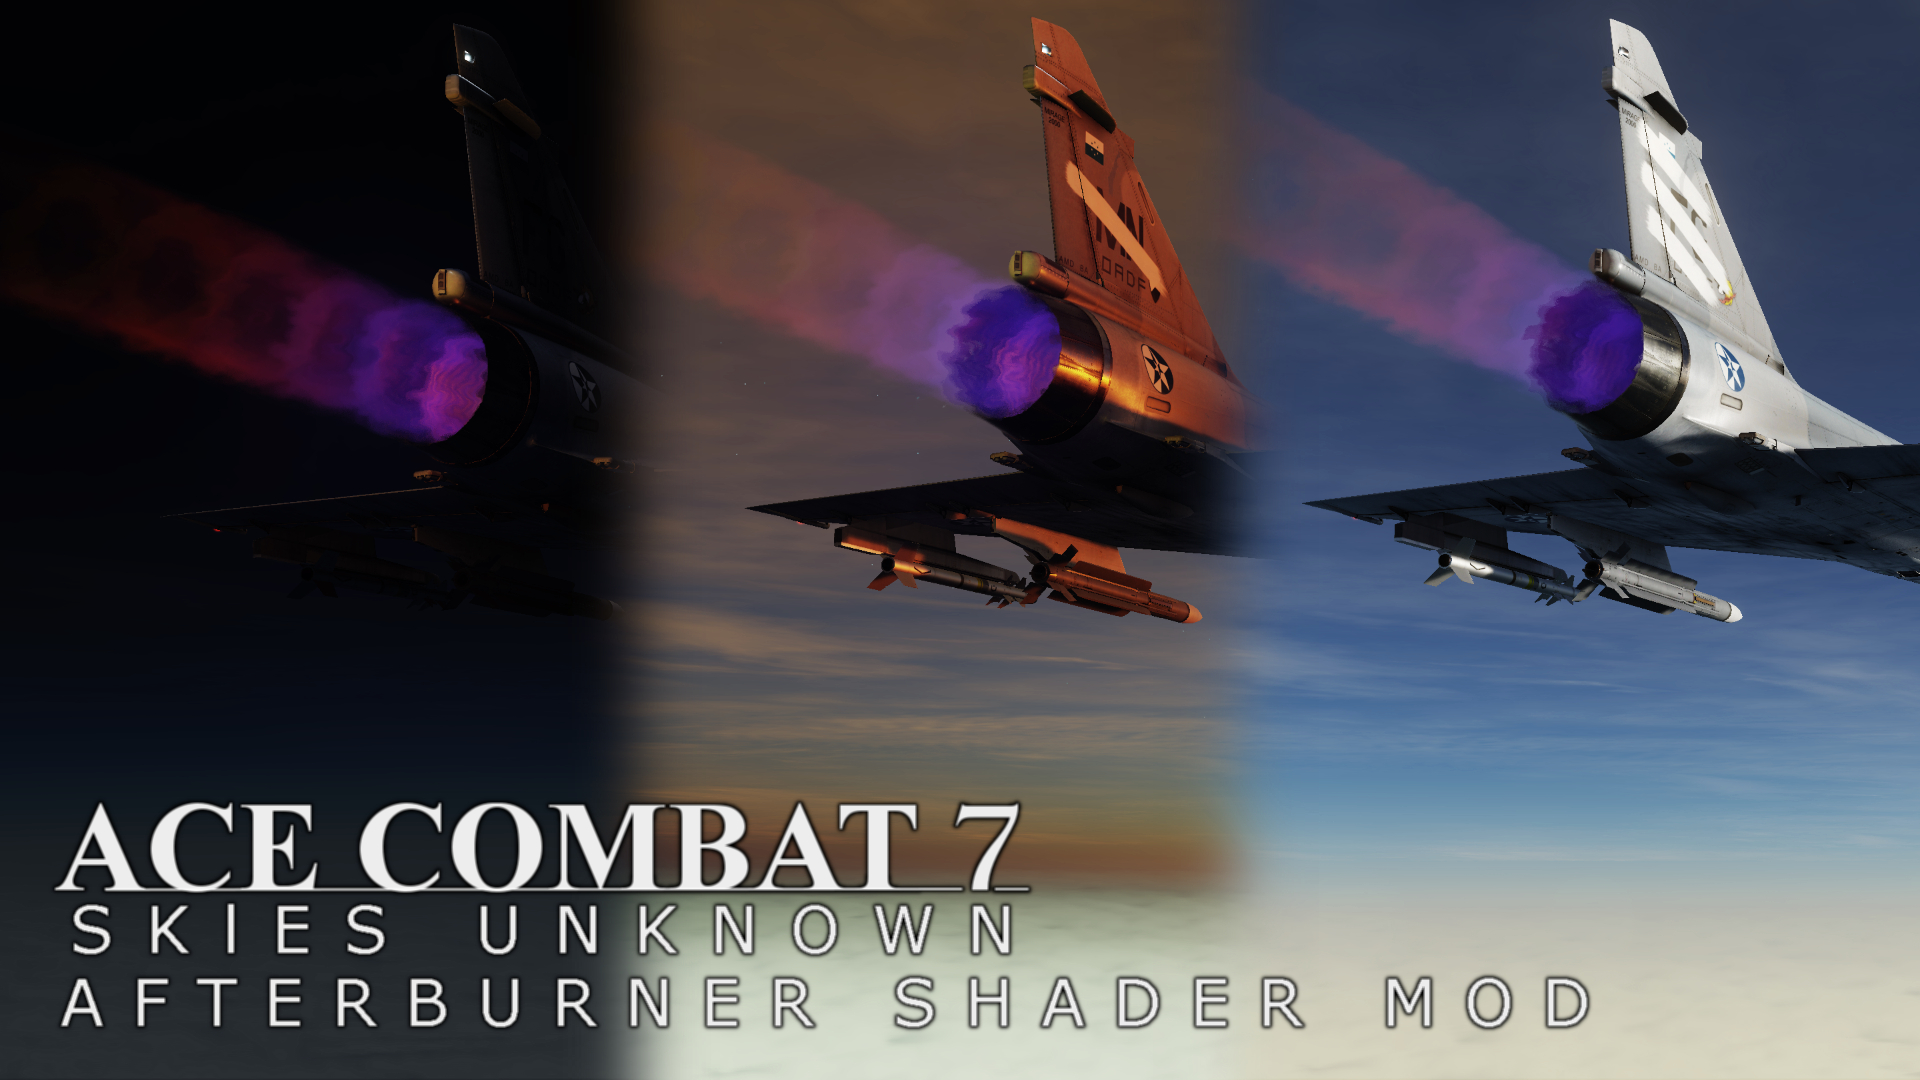 Ace Combat 7 Afterburner Shader Mod